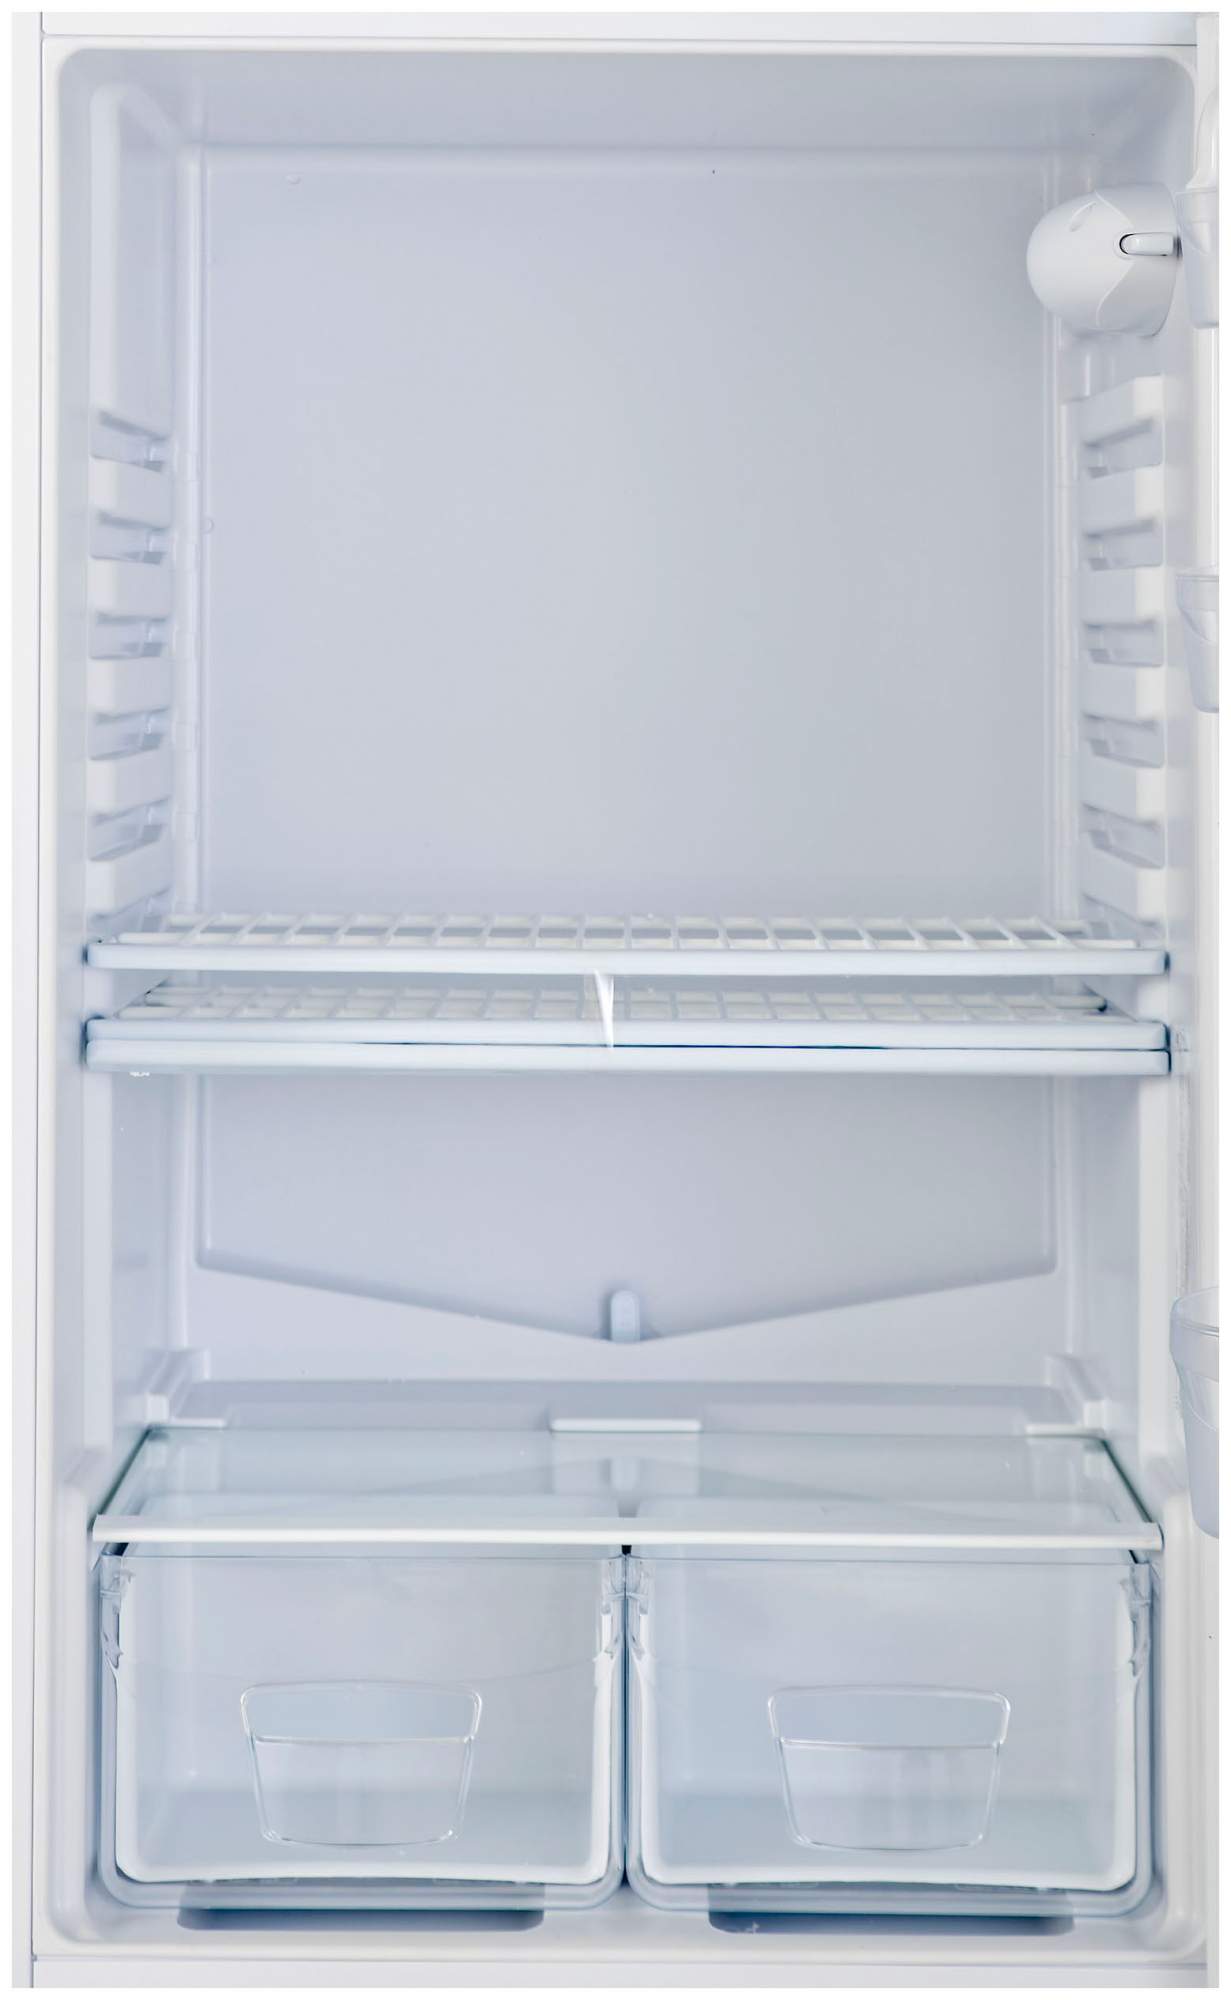 холодильник индезит 23999 фото